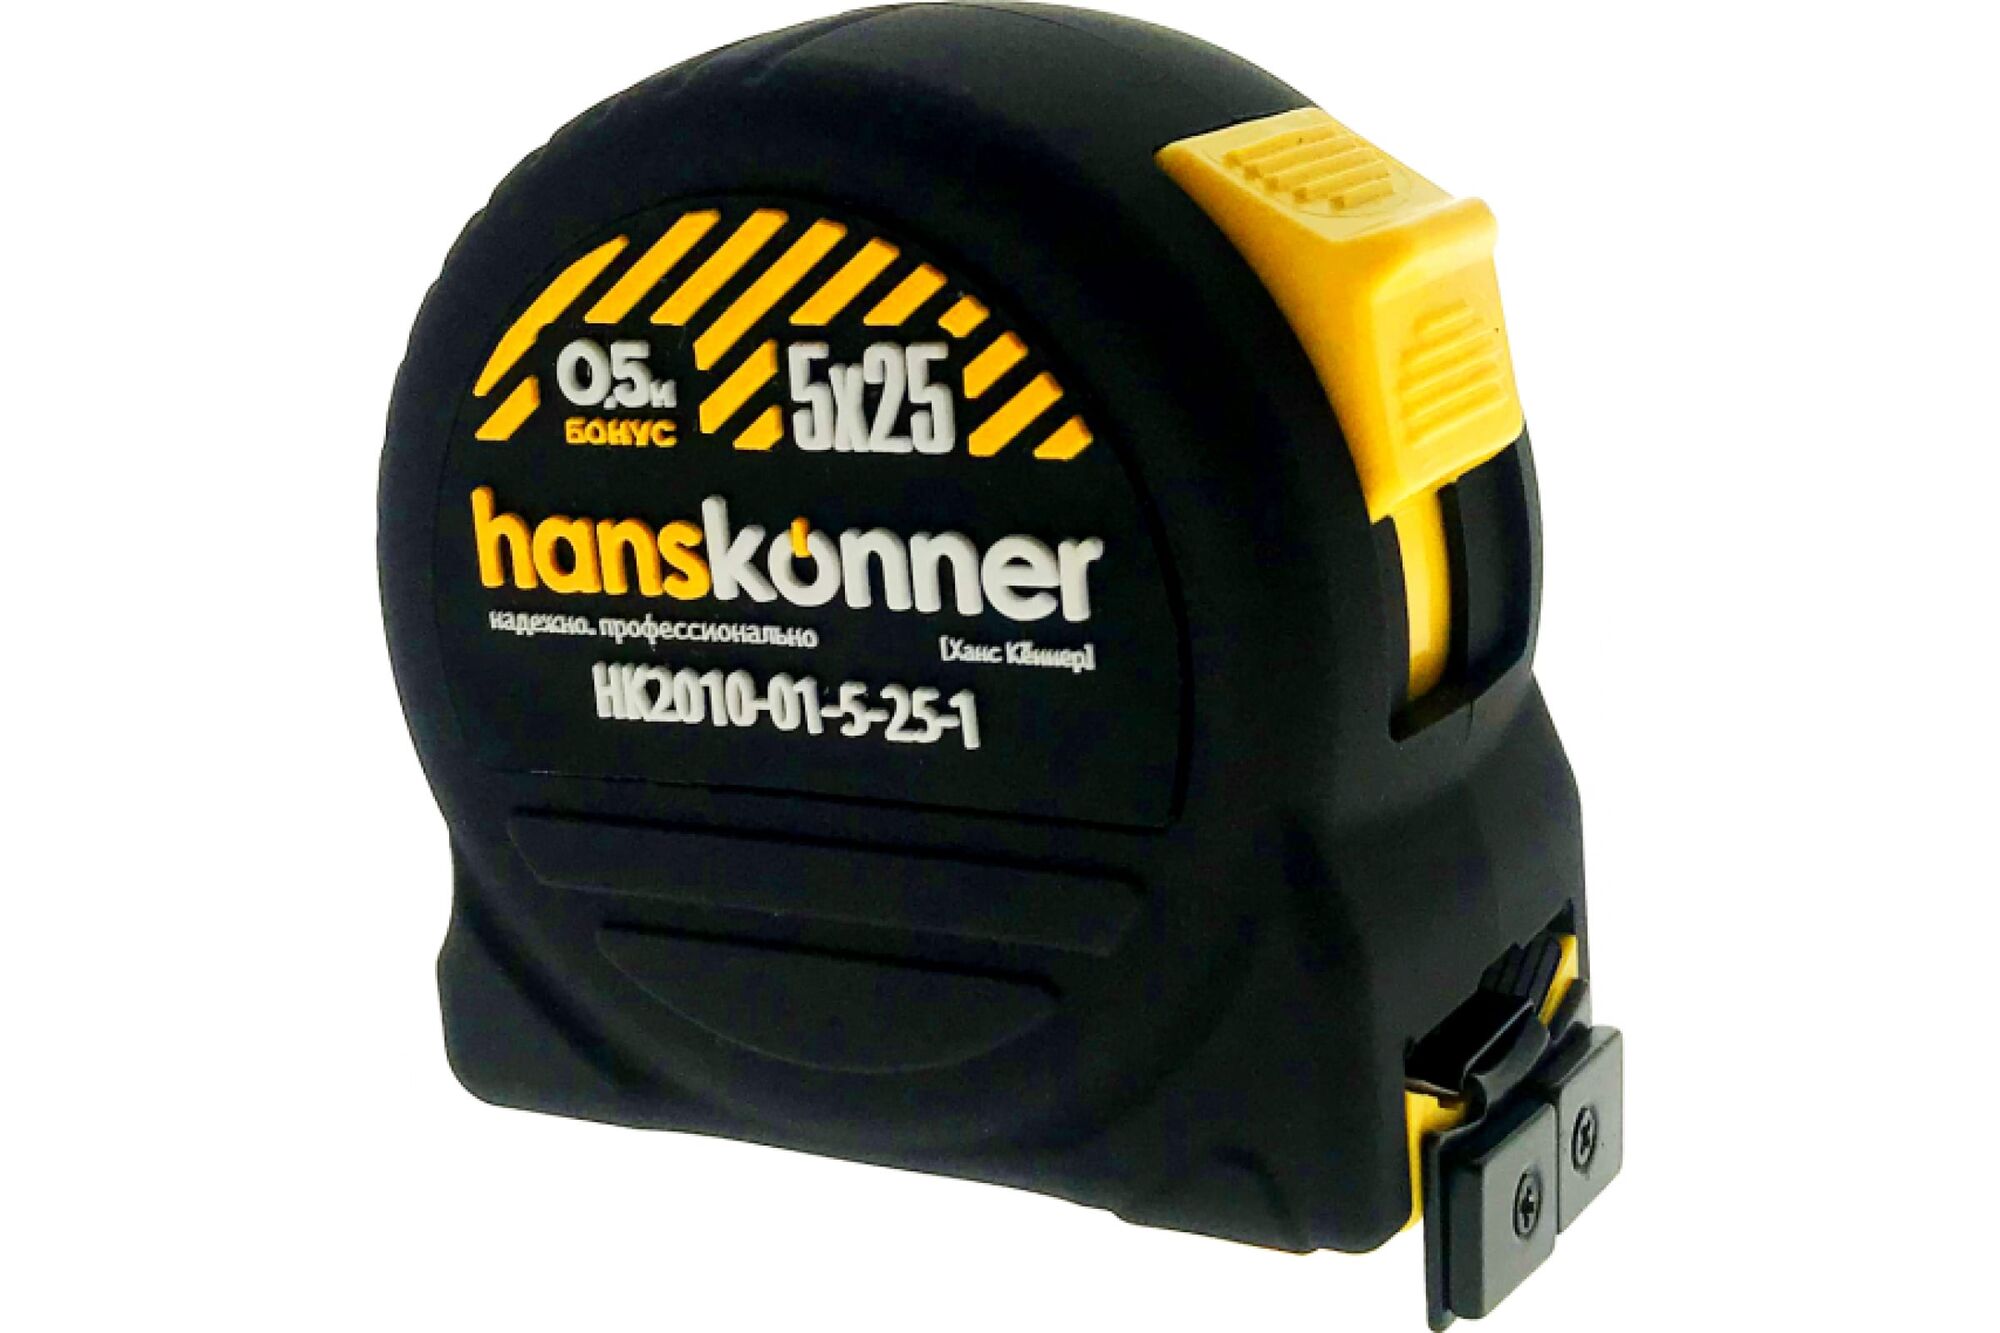 Рулетка Hanskonner 5x25+0,5м HK2010-01-5-25-1